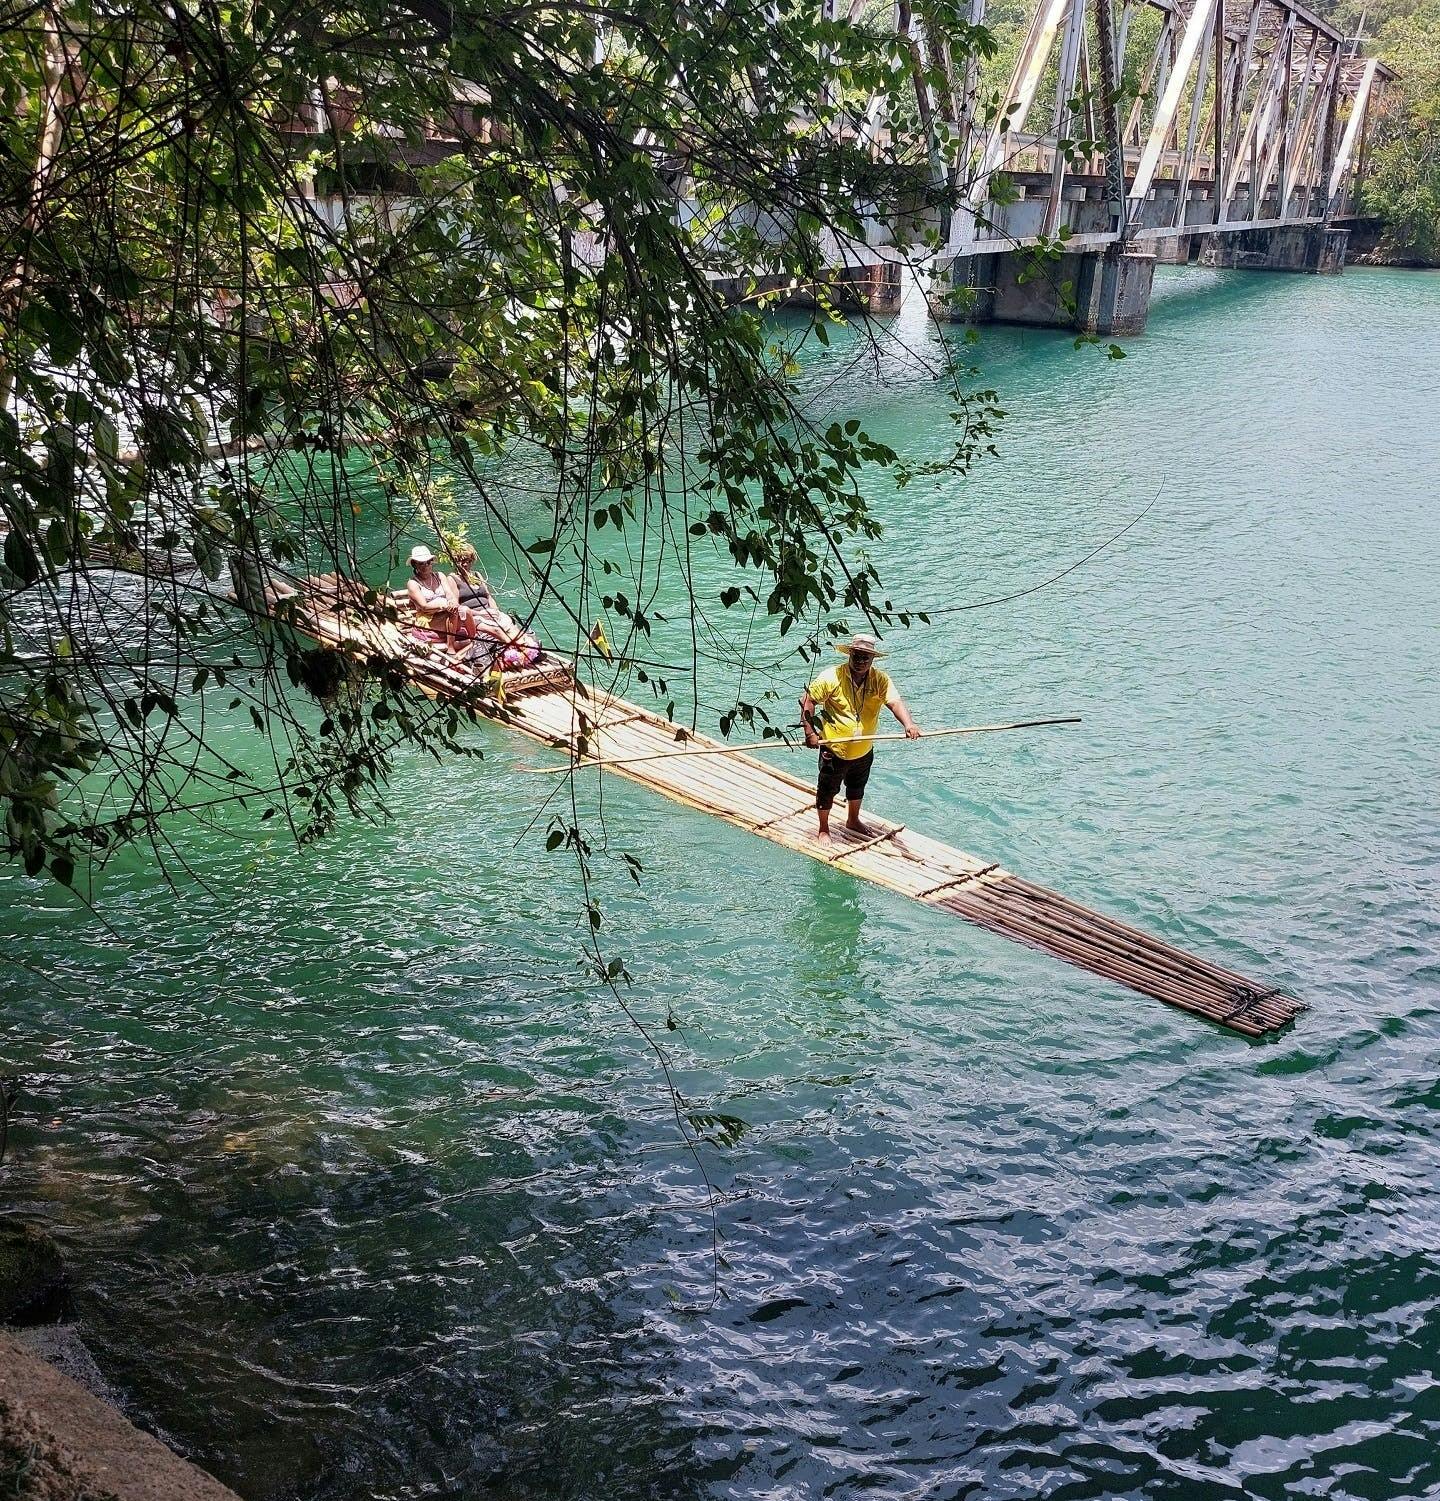 Expérience privée de rafting en bambou sur le Rio Grande